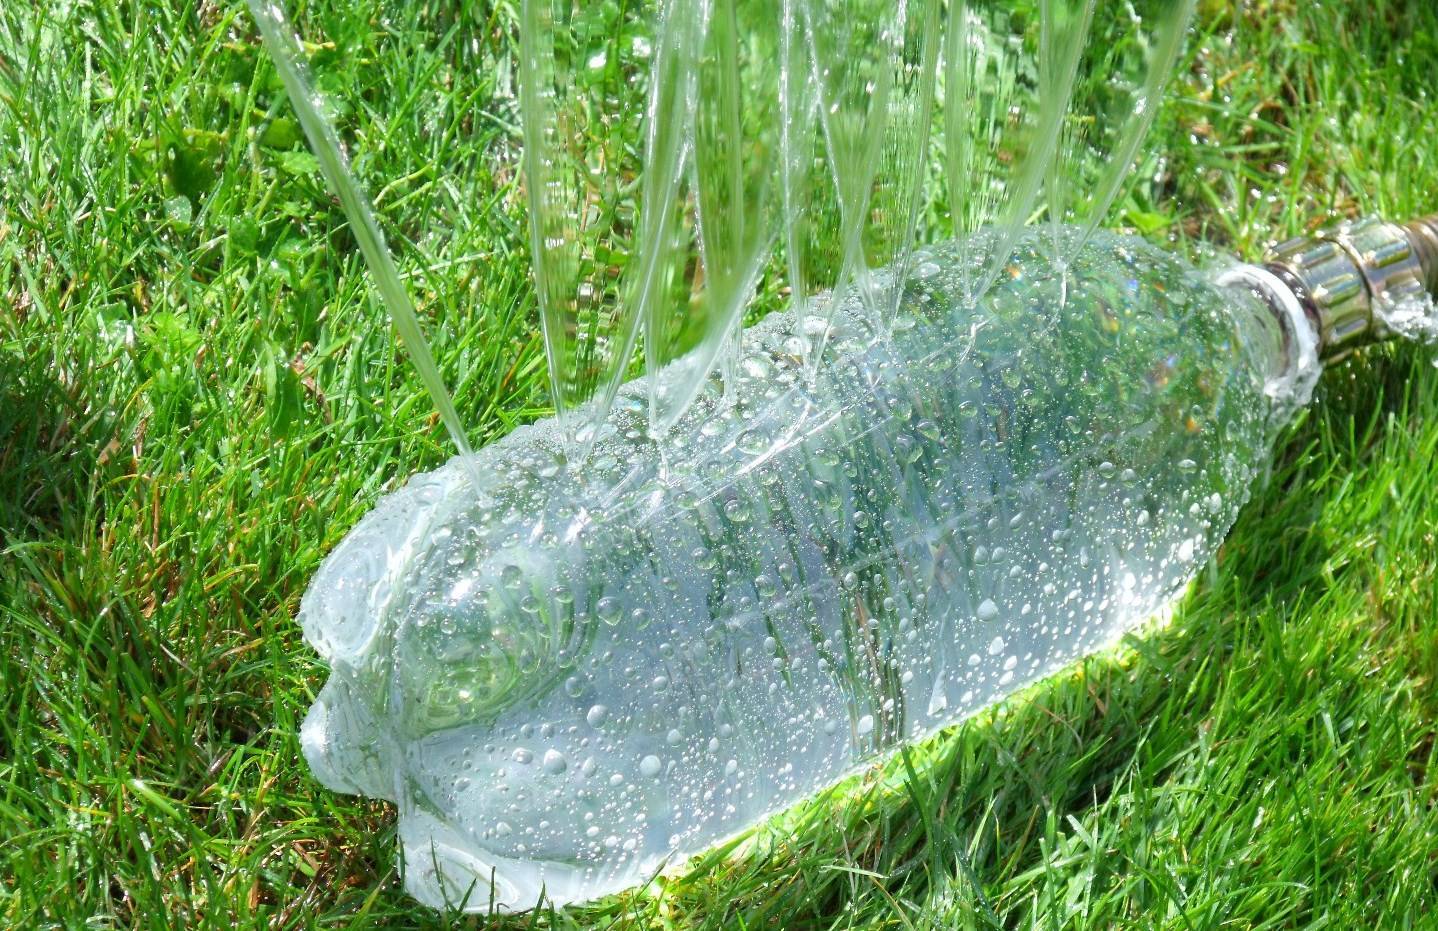 Поделки из пластиковых бутылок своими руками для сада, дачи, огорода — фото идеи, мастер-классы, советы